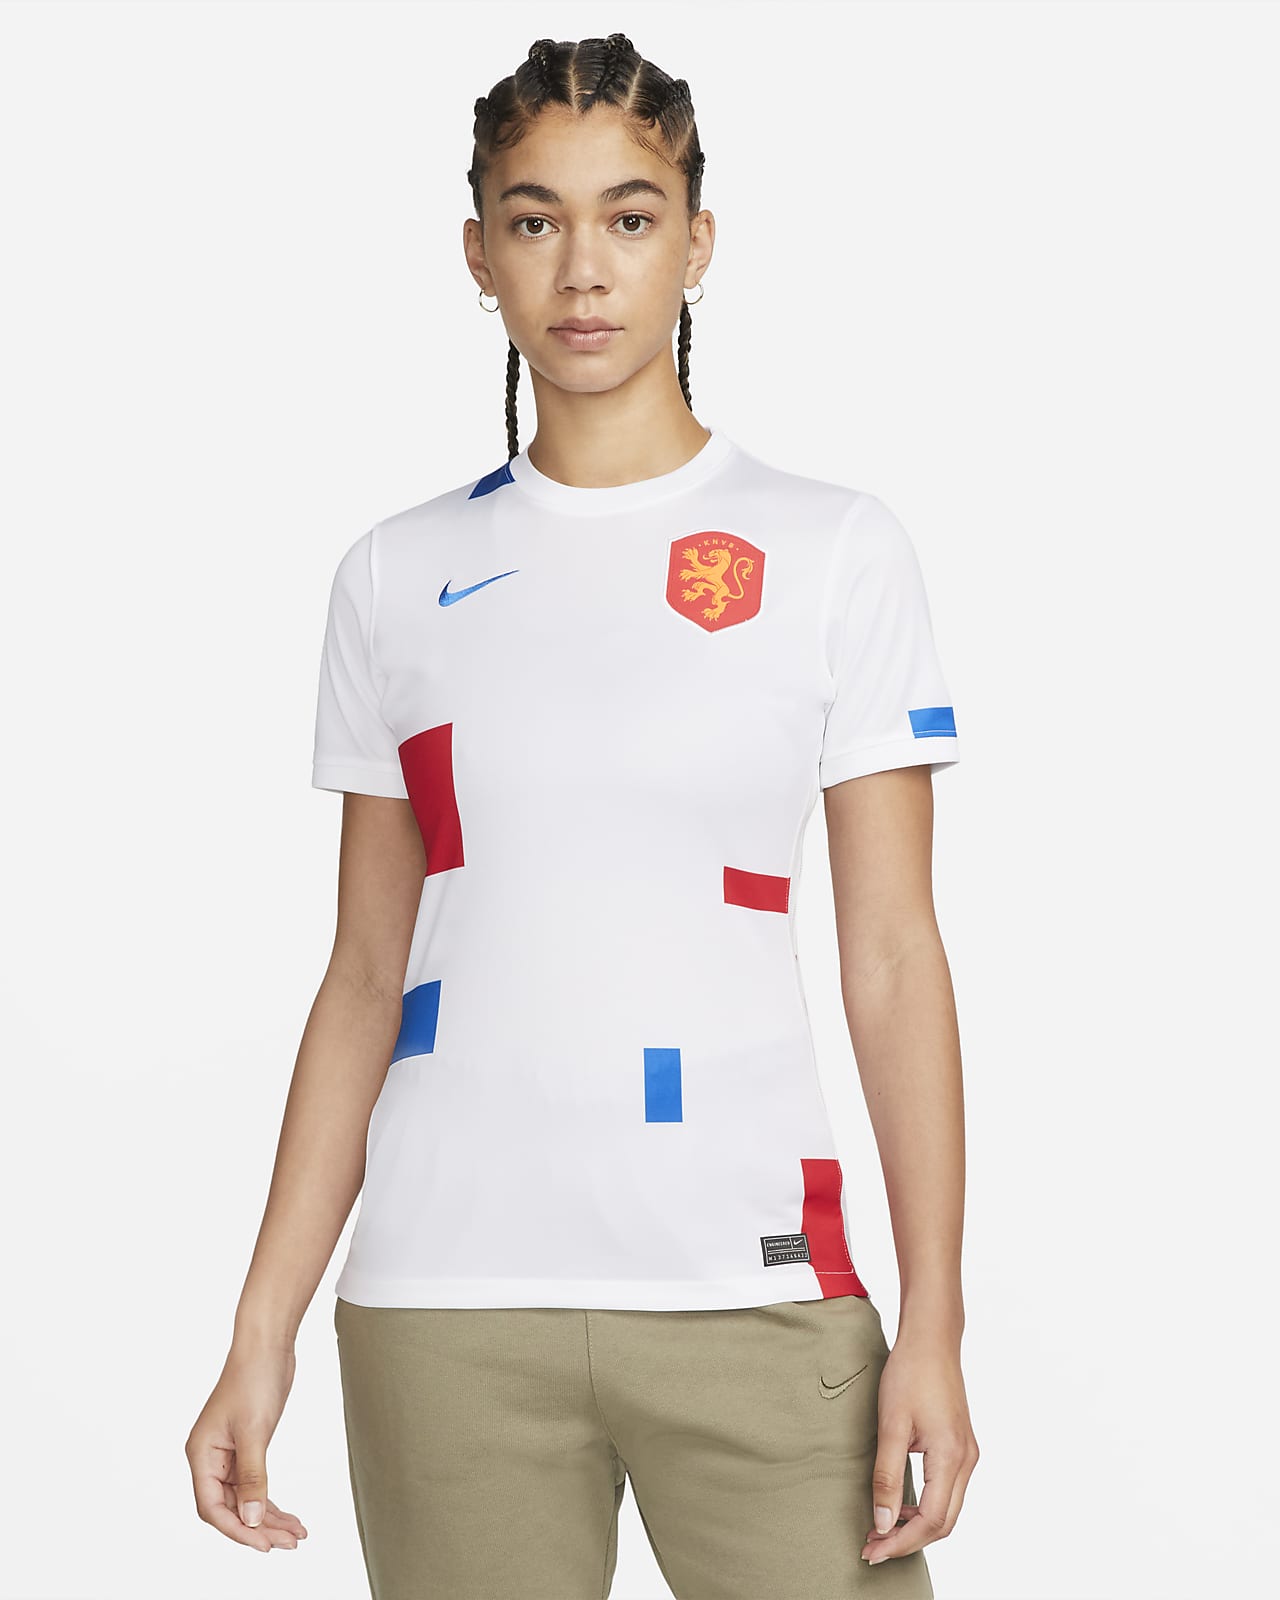 USA Women's Soccer Kit France 2019 Unisex Tank Top